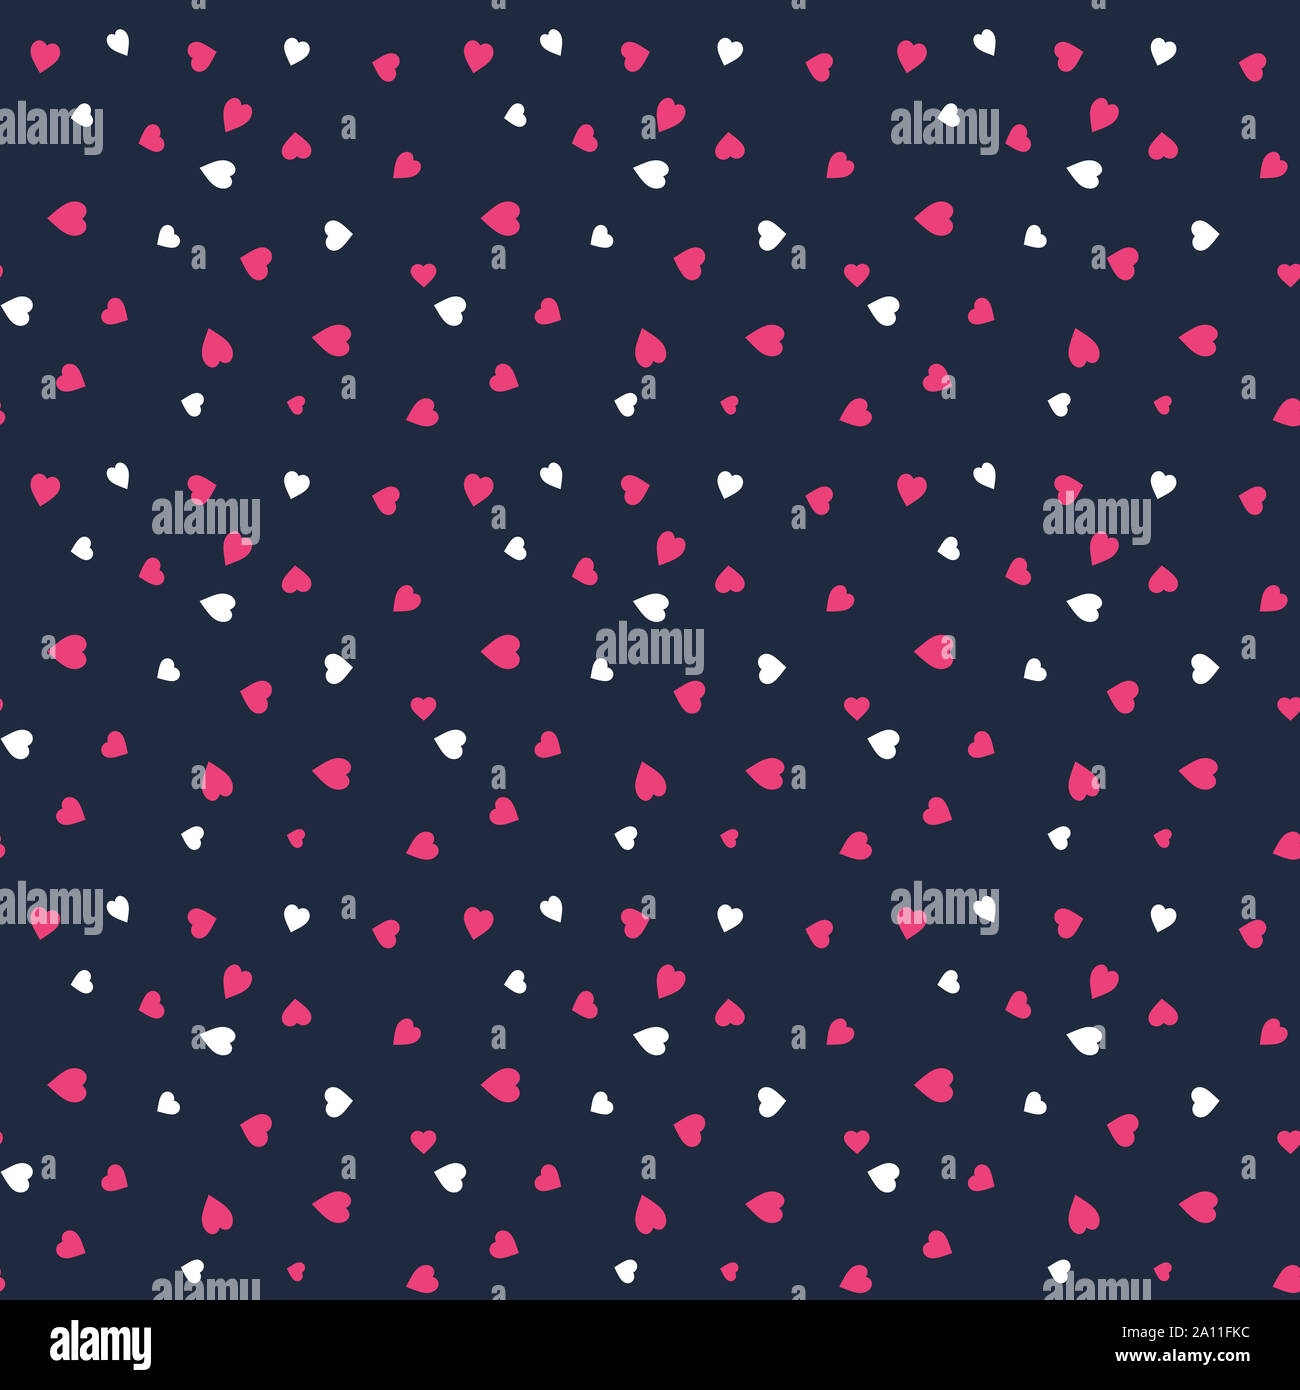 Pink White Heart Seamless Pattern Vector Dark Blue Background